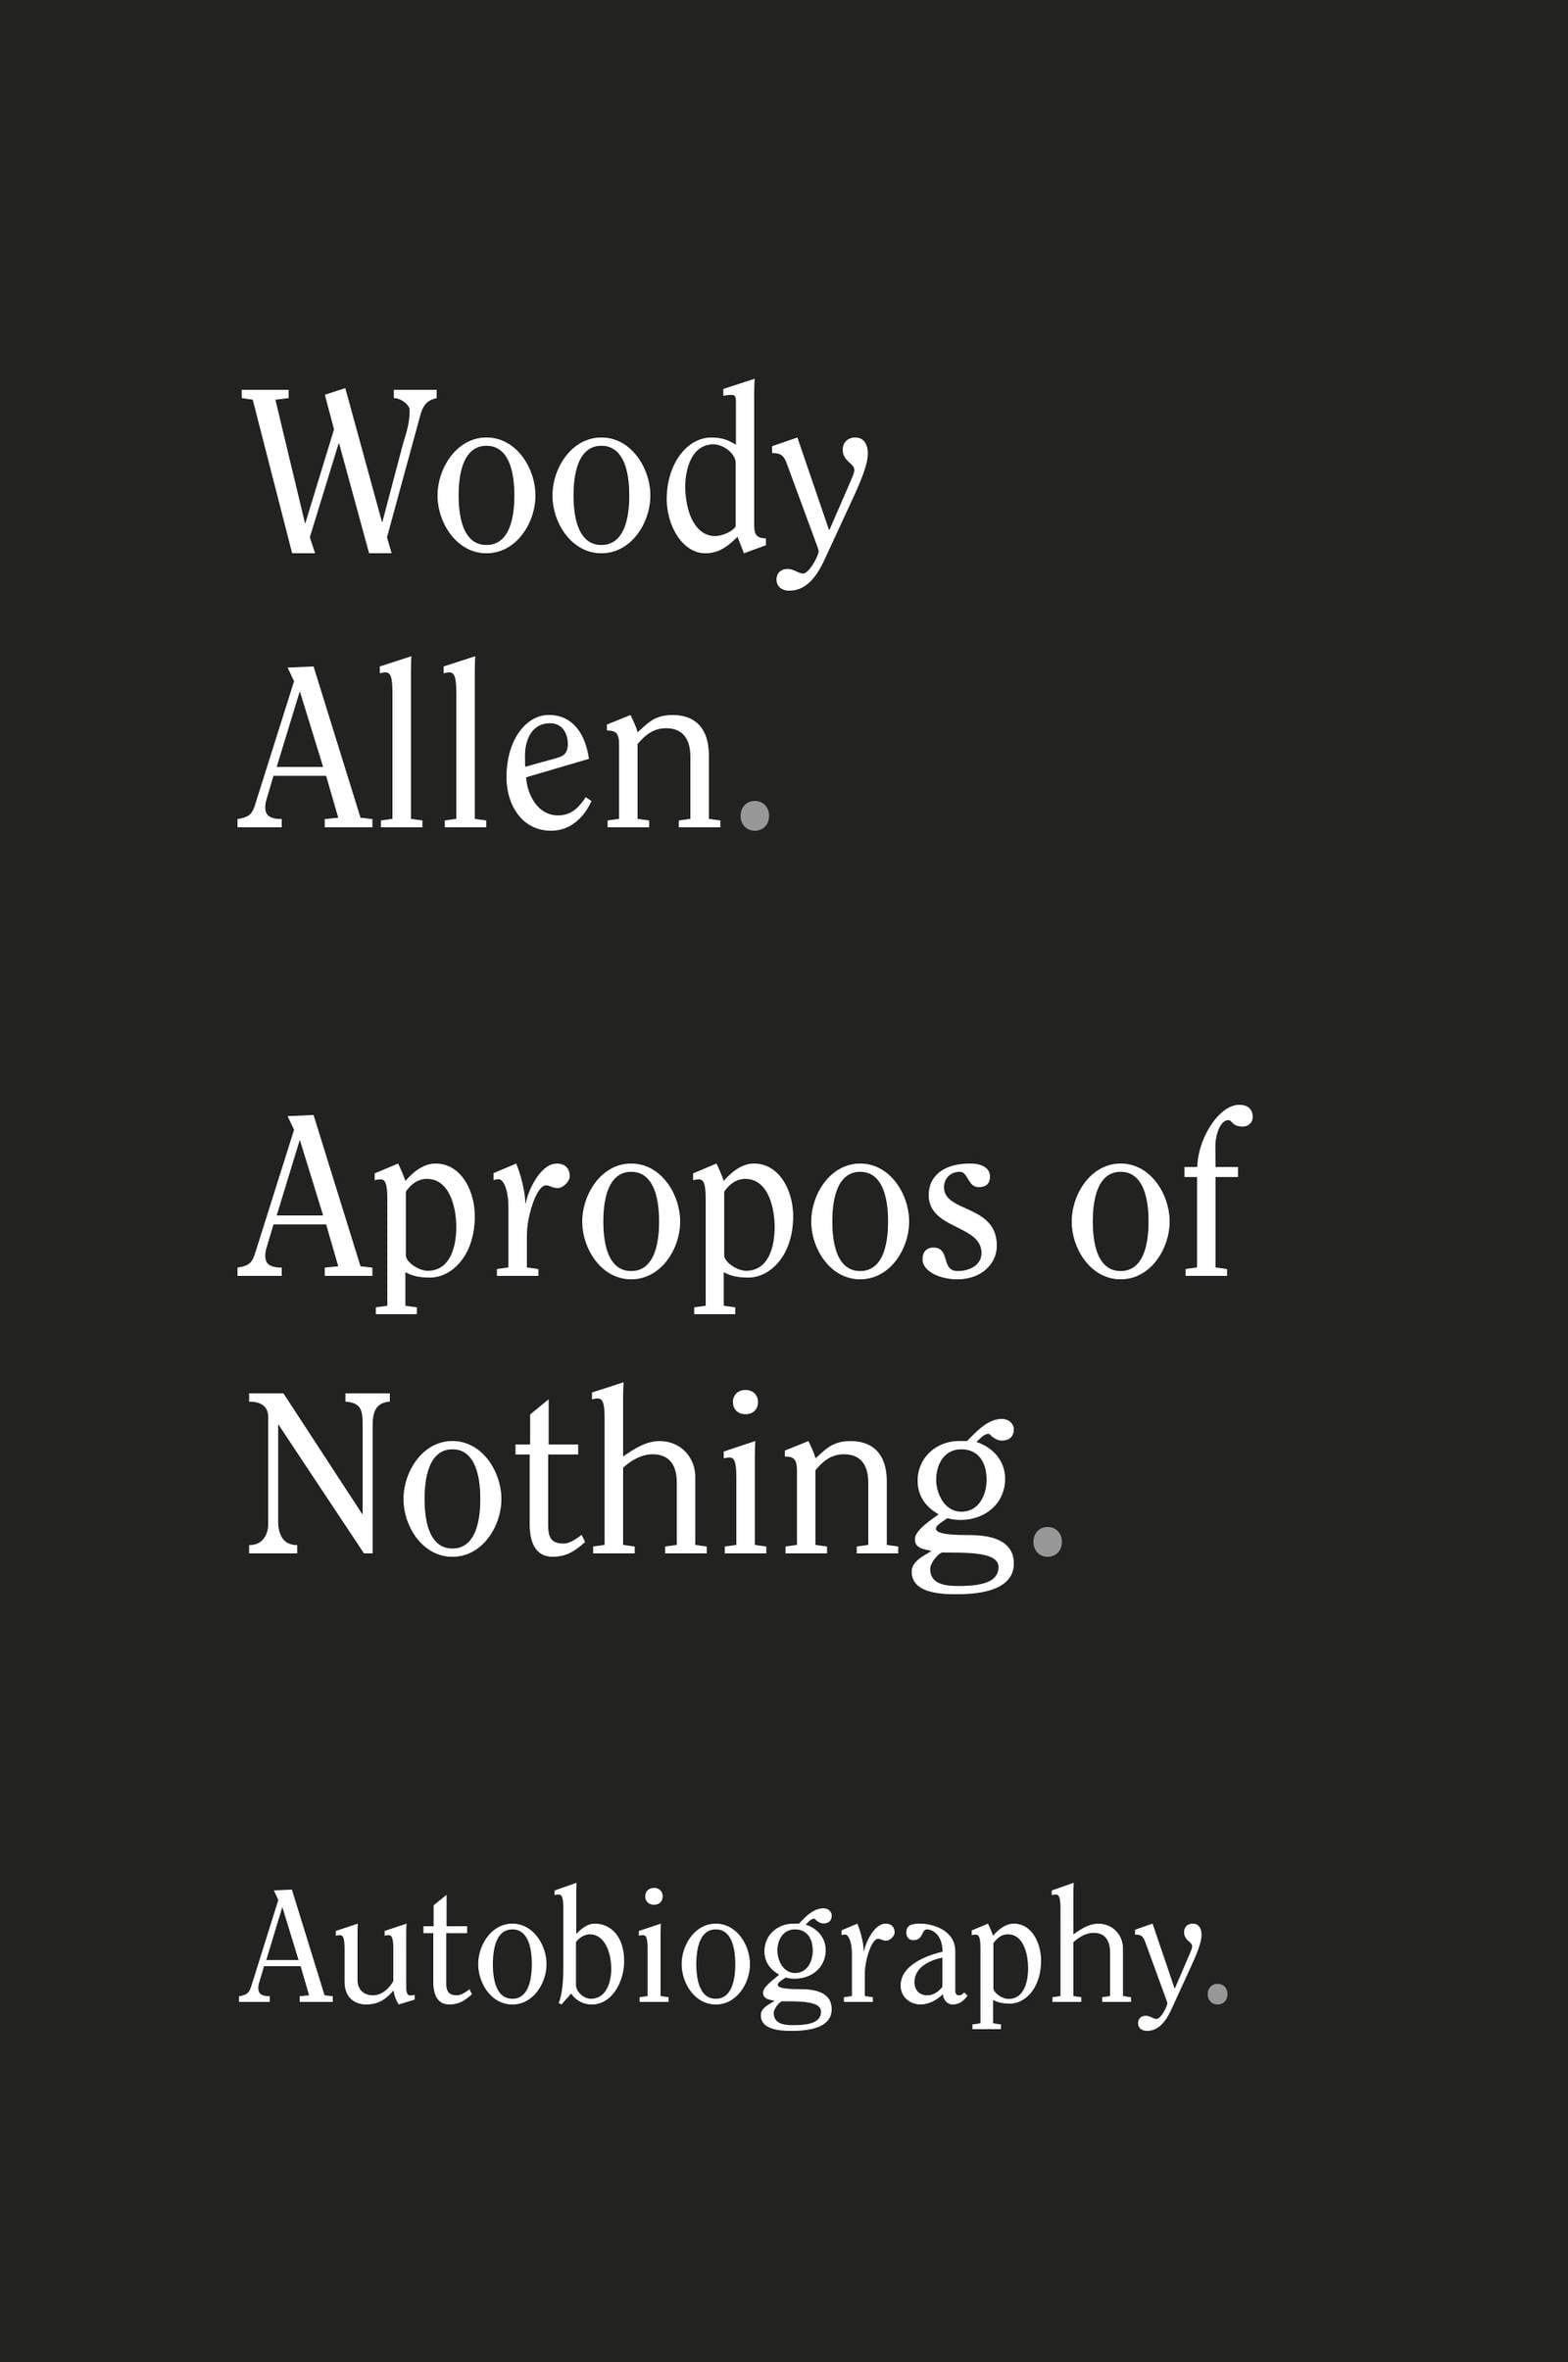 Long-rumored Woody Allen memoir coming in April